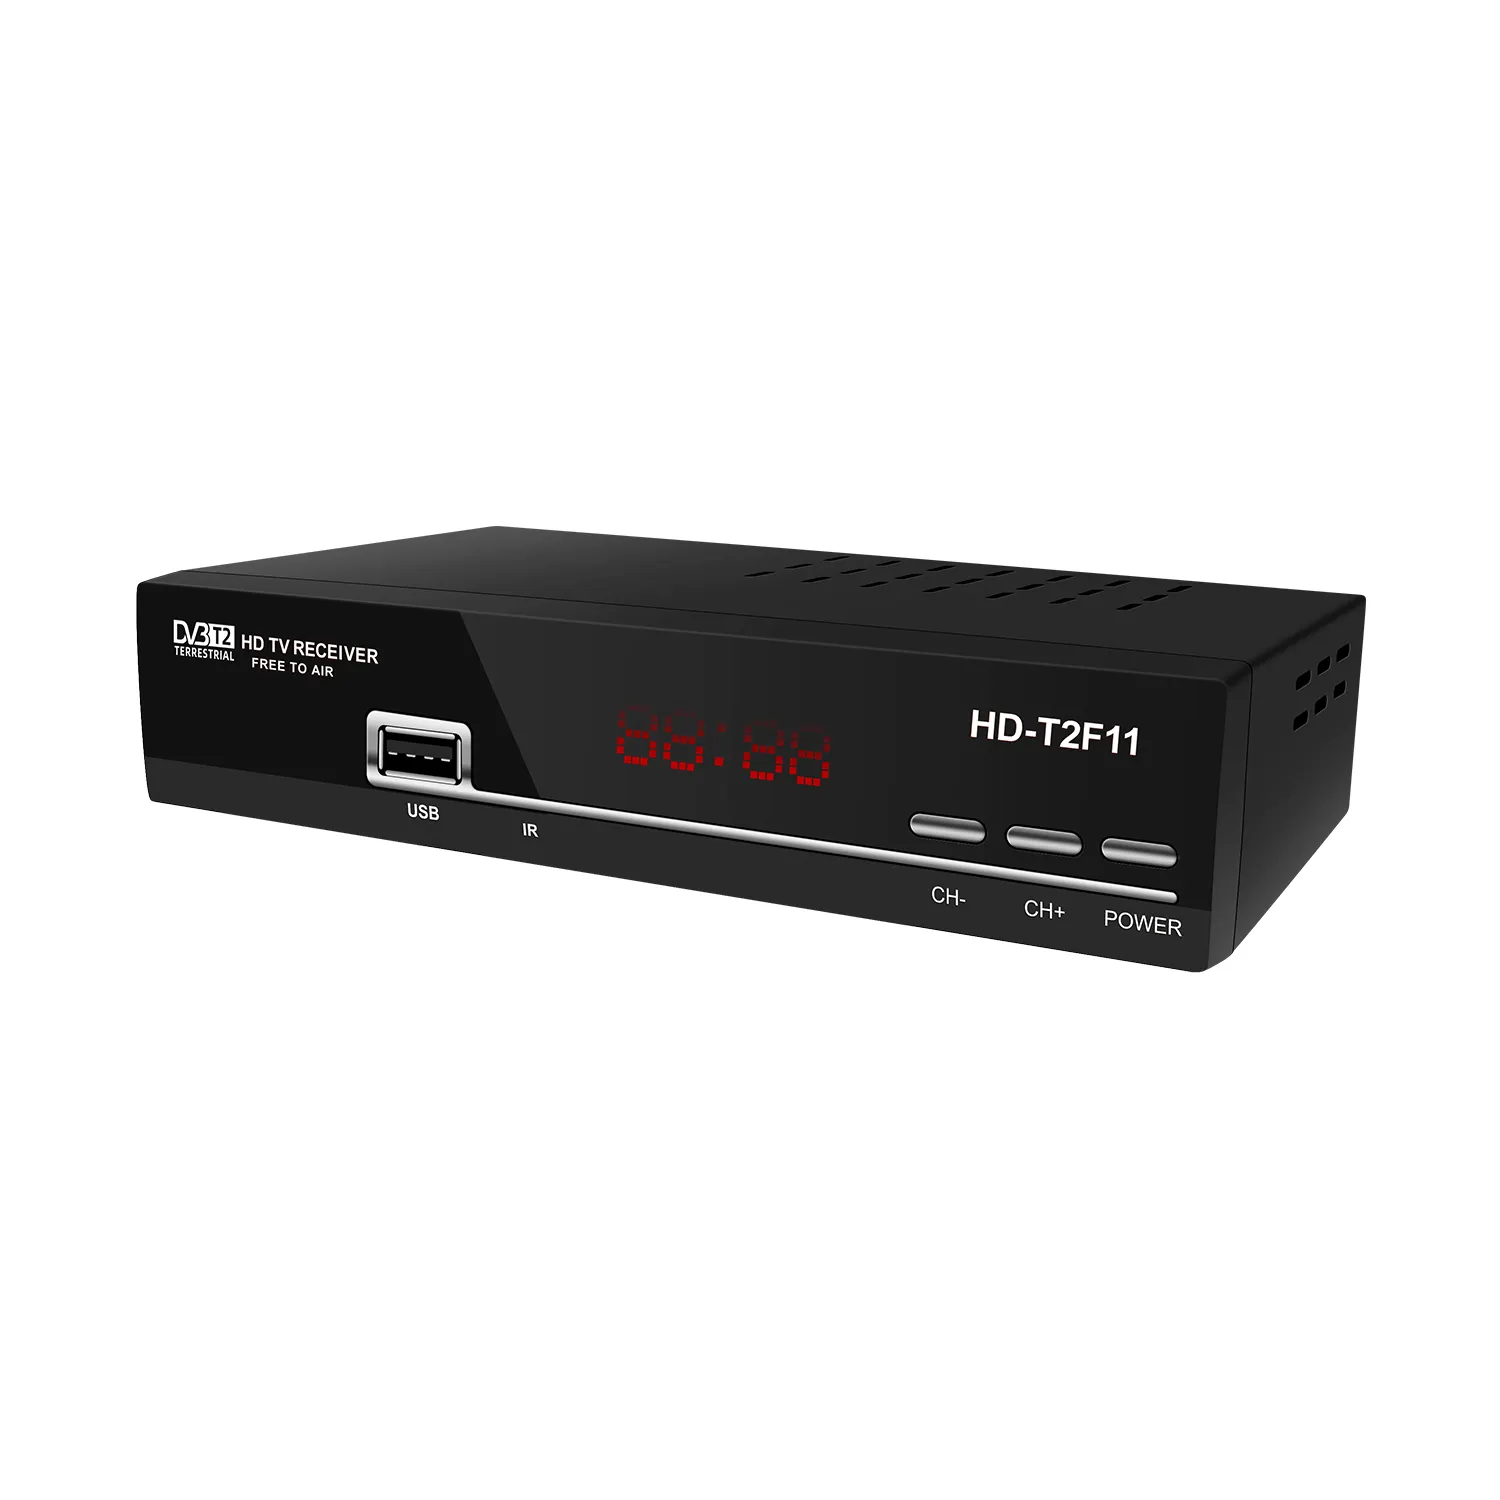 Set Top Box TV Digital Terestrial Bebas Ditiup MPEG4/H.264 Dekoder FHD 1080P Mendukung USB WiFi Dongle Fungsi untuk Afrika